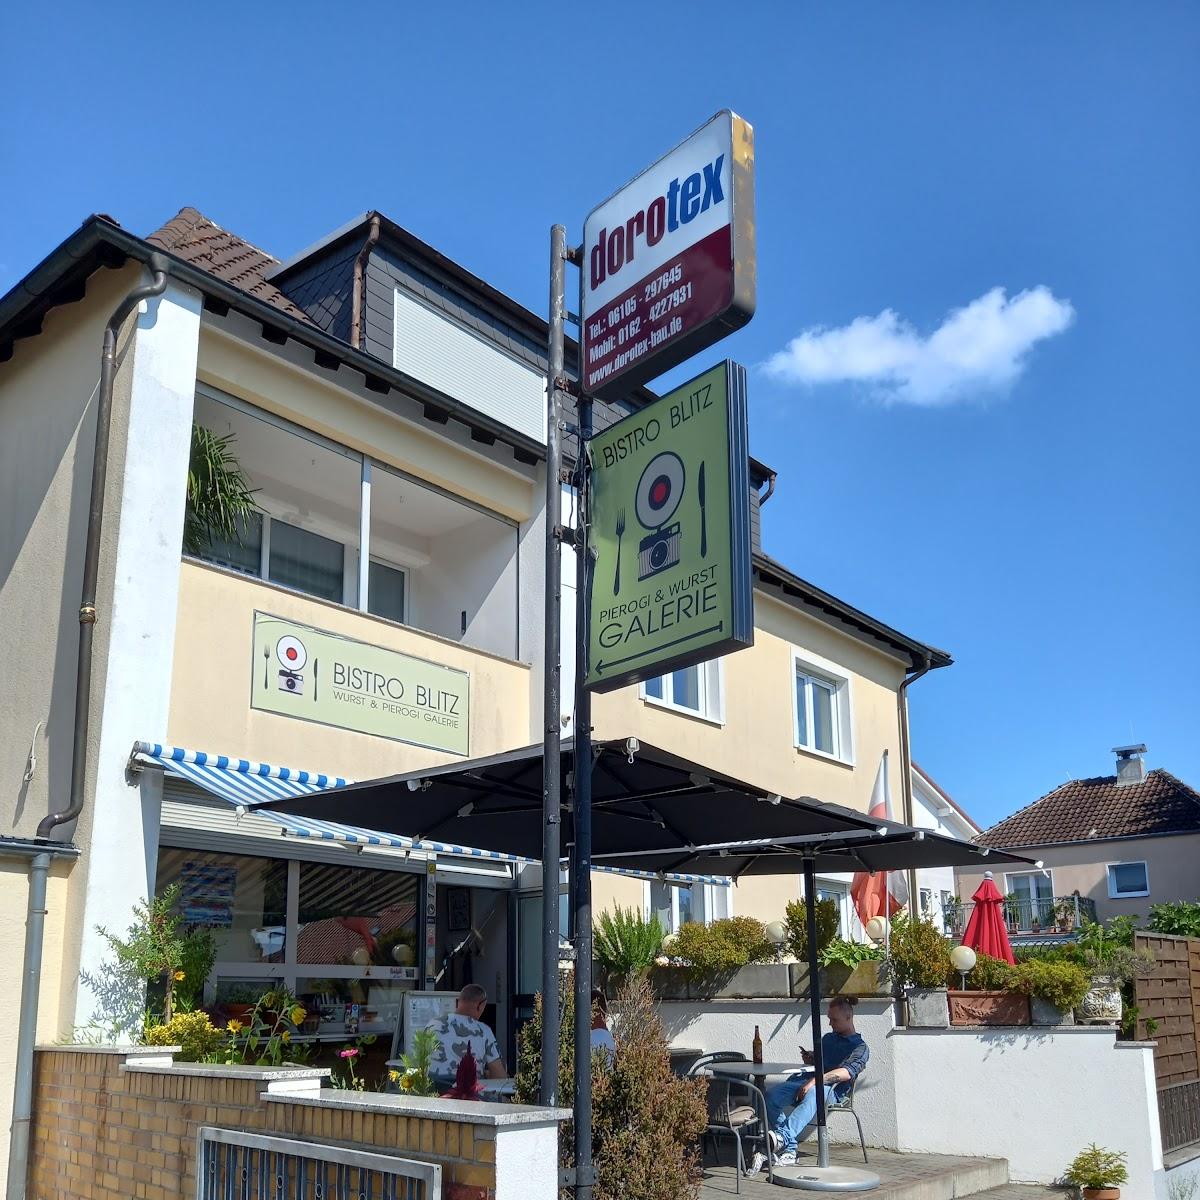 Restaurant "Bistro Blitz" in Mörfelden-Walldorf